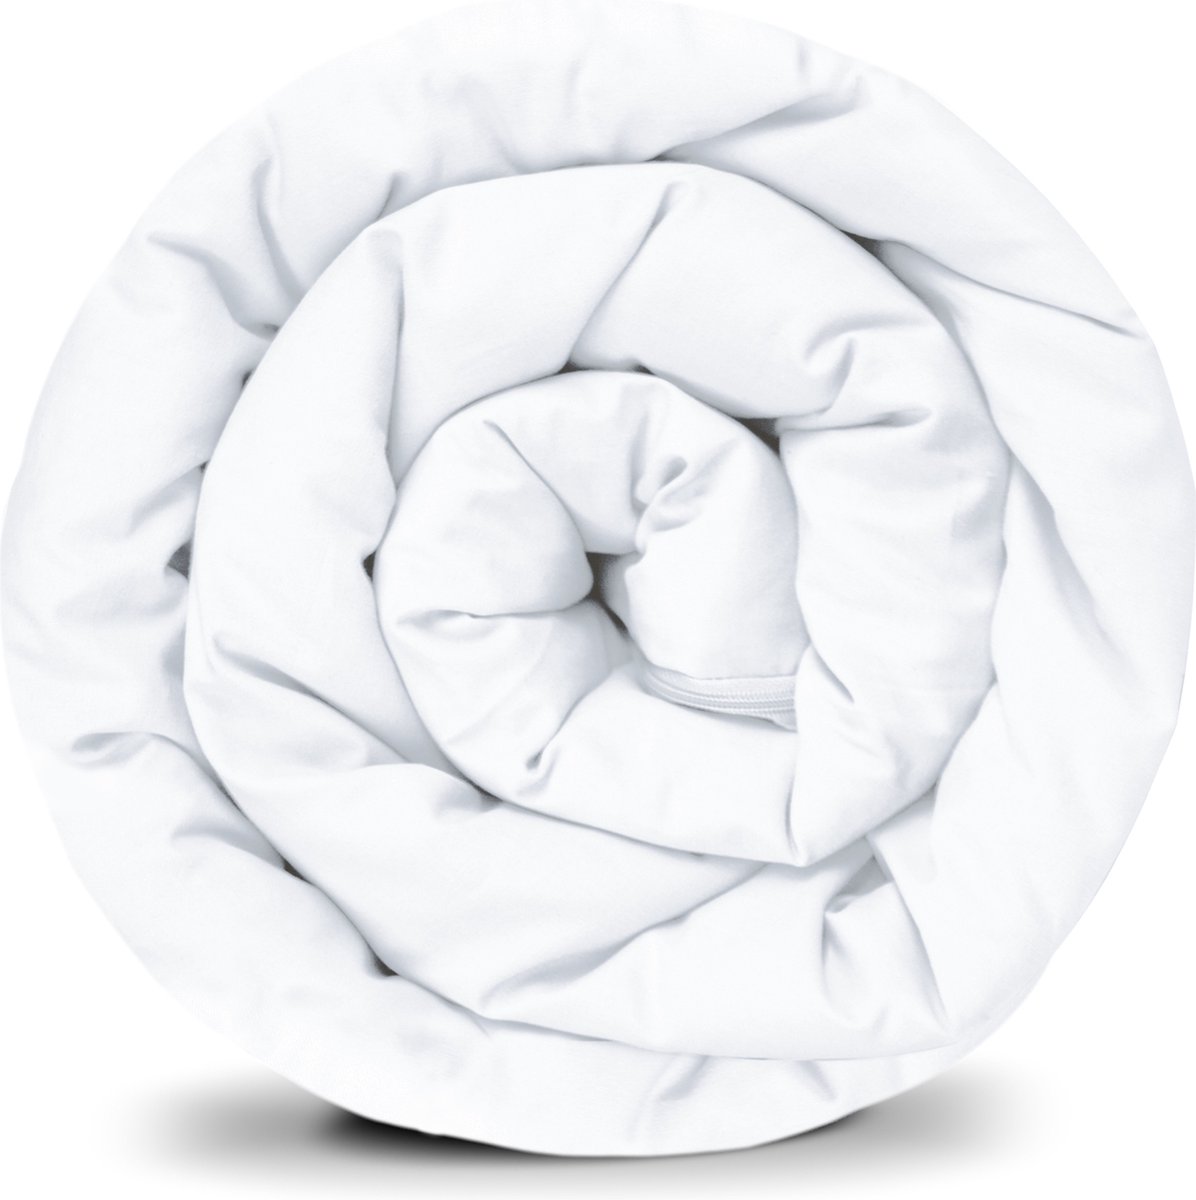 BALANCE Basic verzwaarde dekenhoes in wit katoen ritssysteem zomerhoes voor volwassenen/tieners voor betere slaap afmeting: 150x220 cm